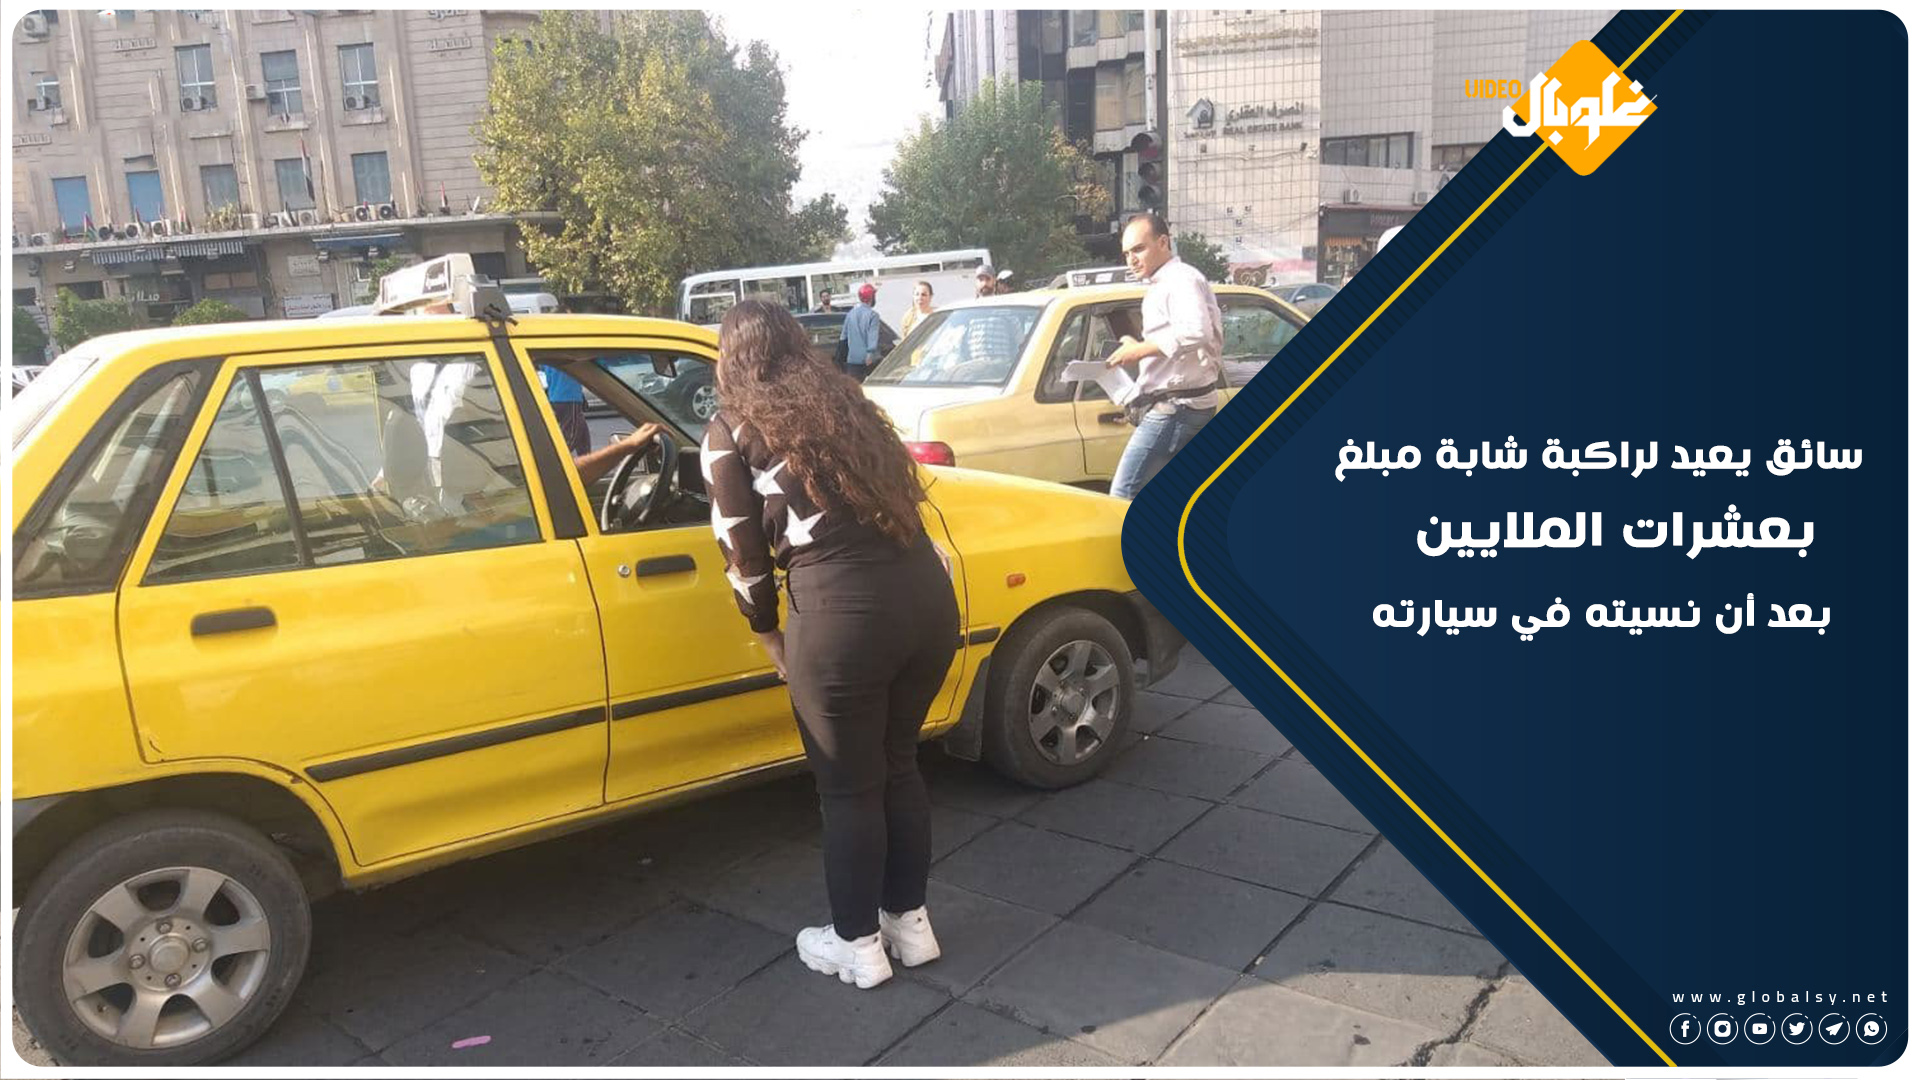 سائق تاكسي يعيد مبلغ بعشرات الملايين لشابة نسيتهم داخل سيارته في دمشق